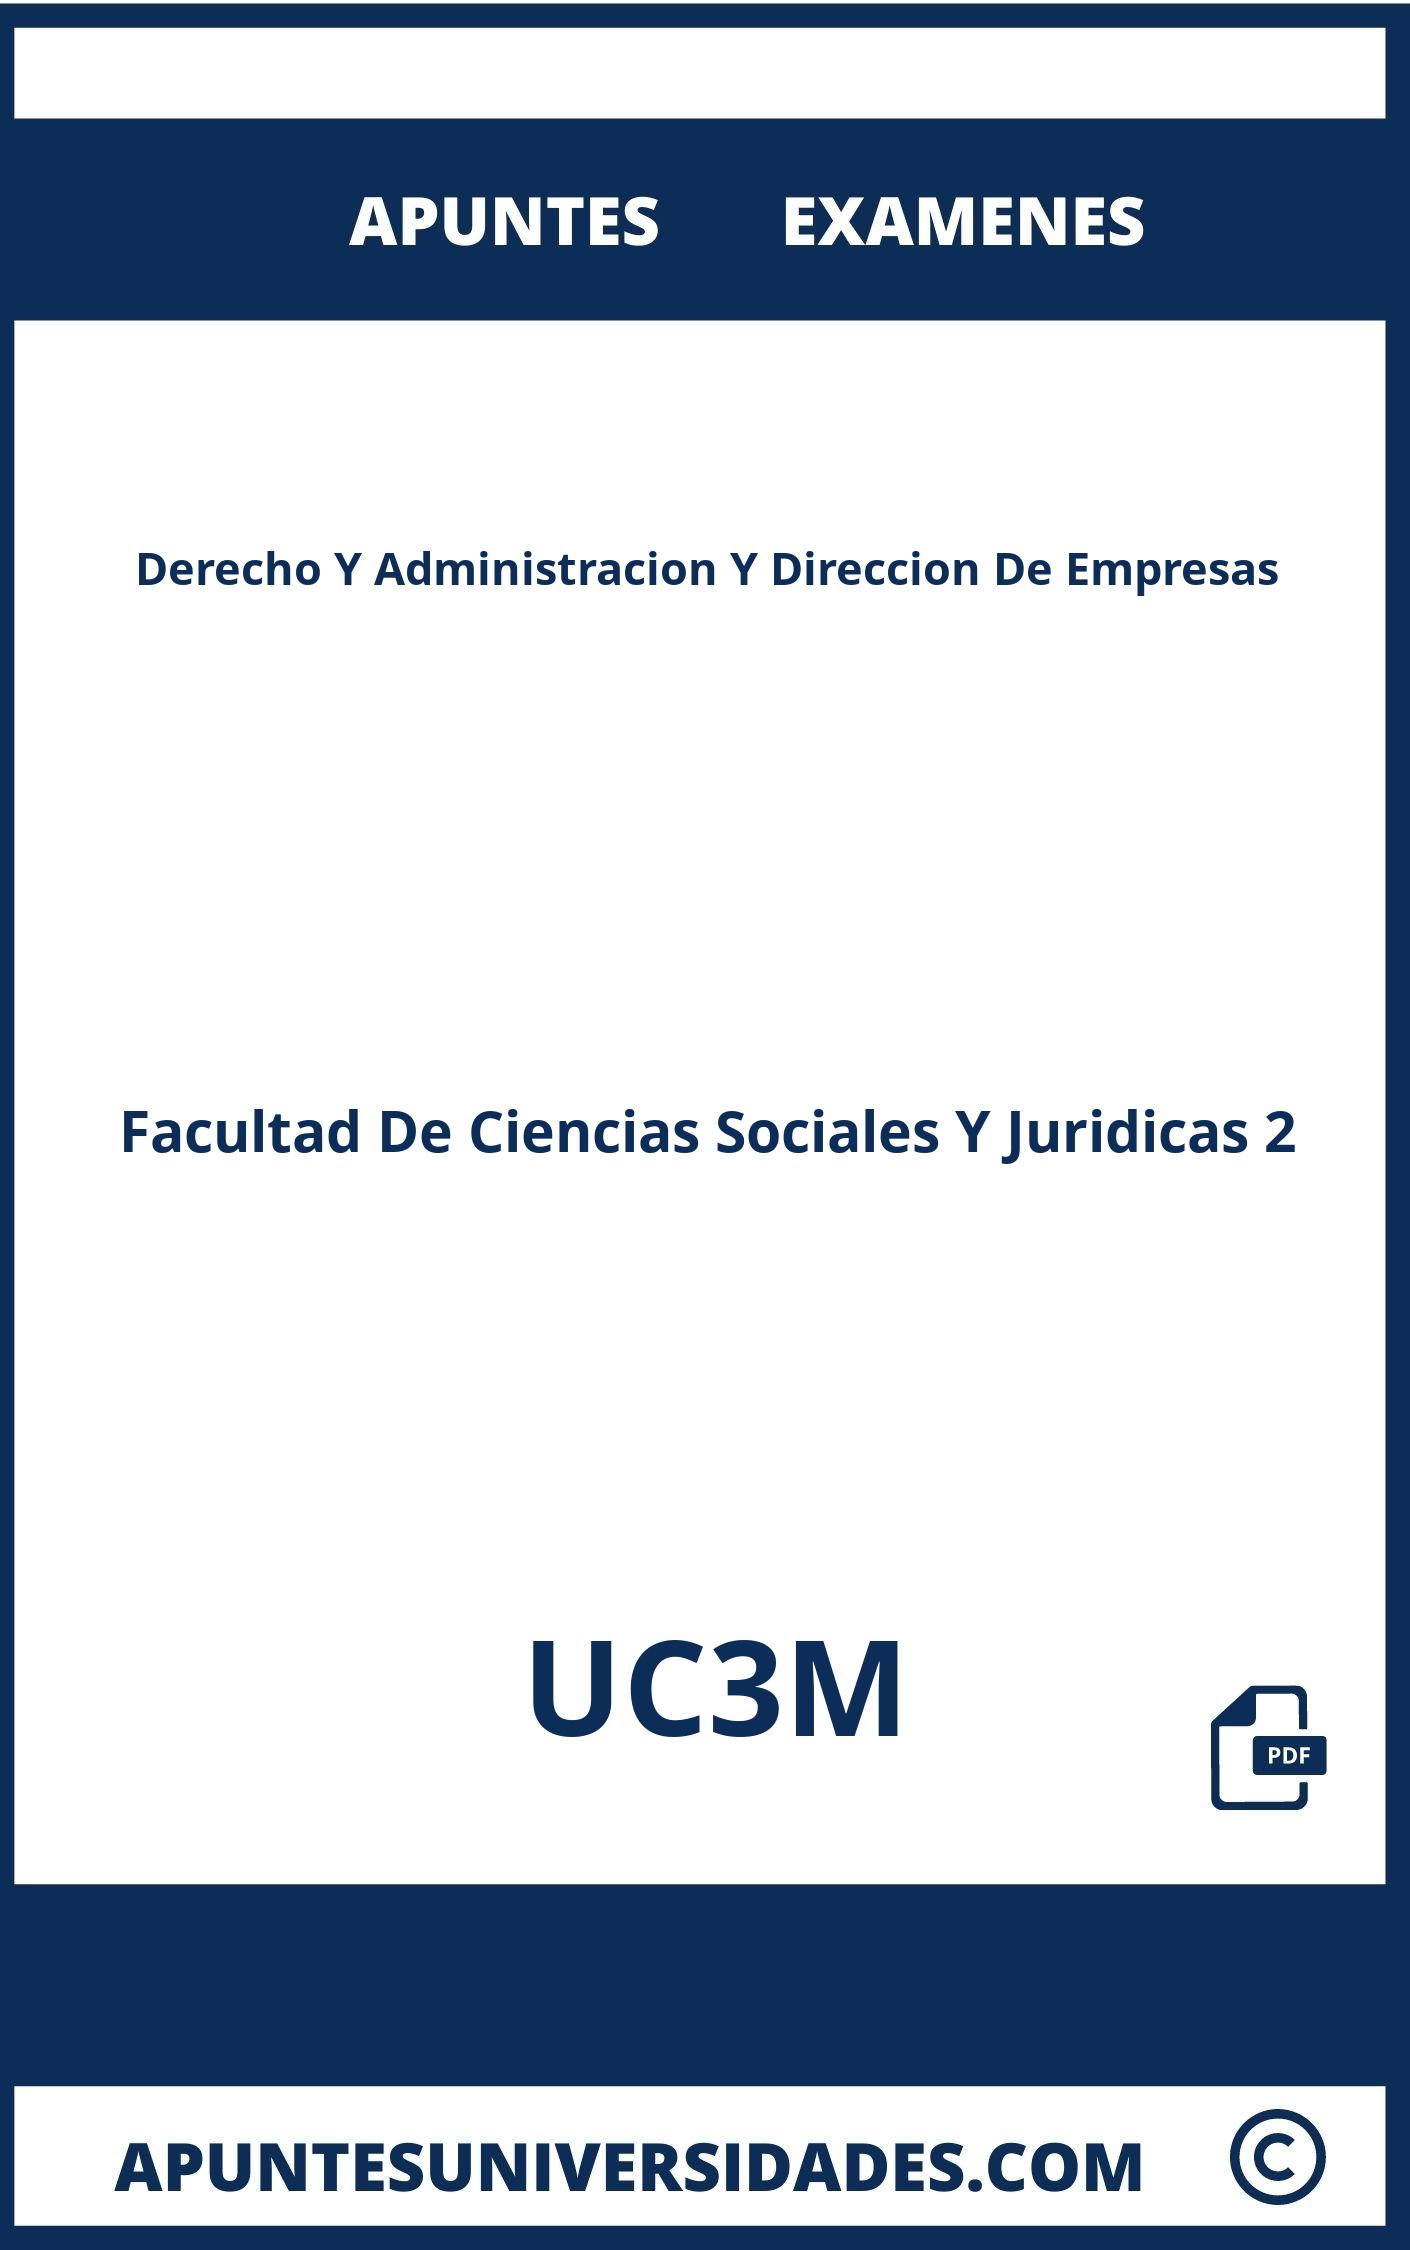 Examenes Derecho Y Administracion Y Direccion De Empresas UC3M y Apuntes